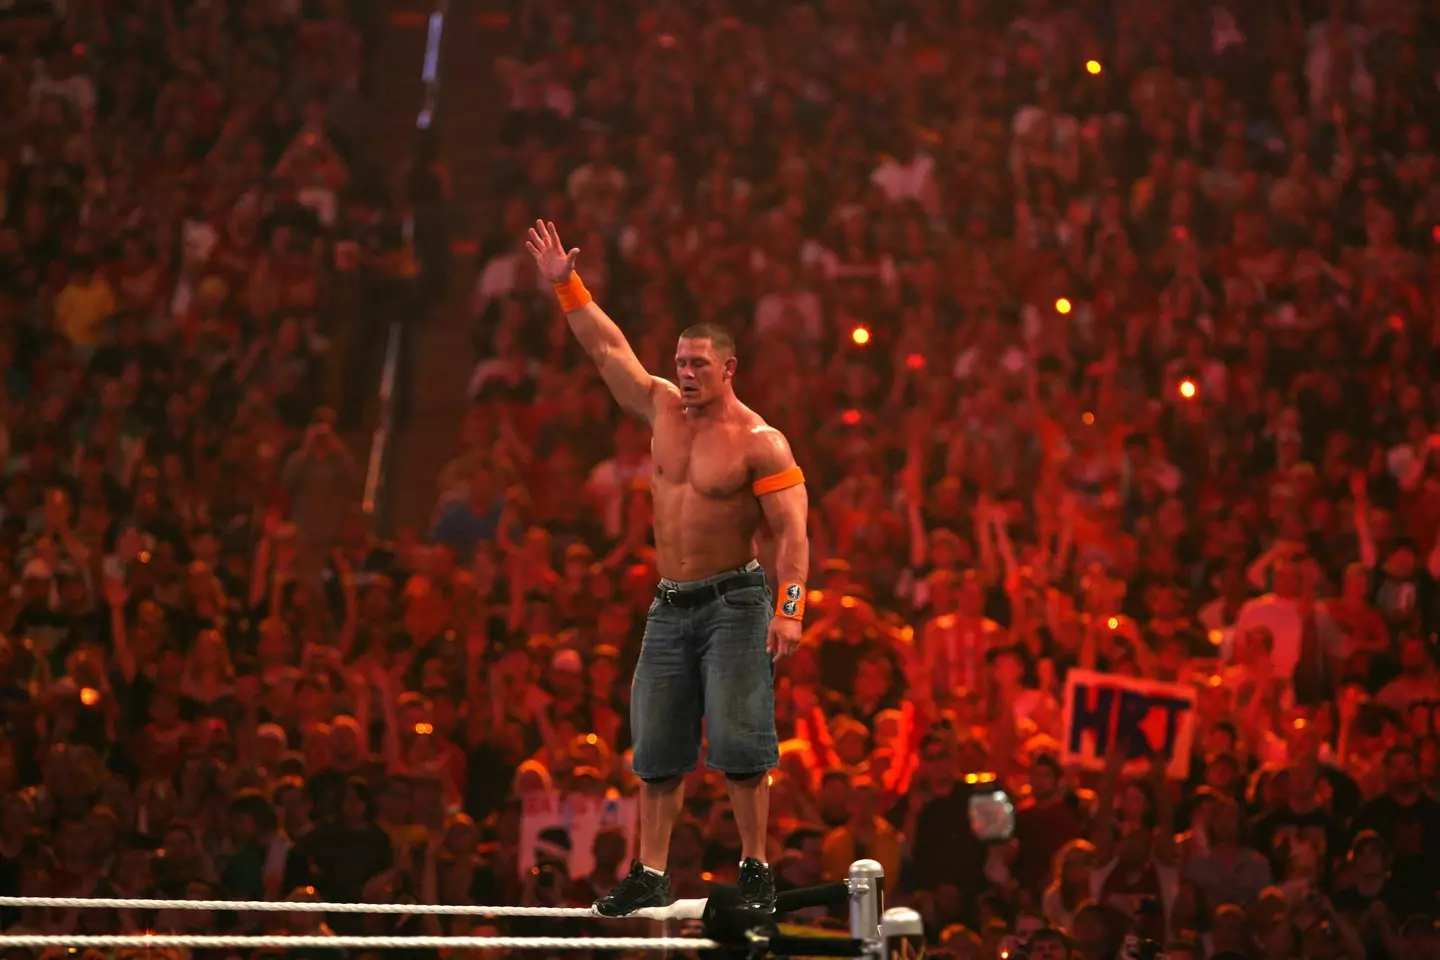 Cena has said he owes McMahon a lot.